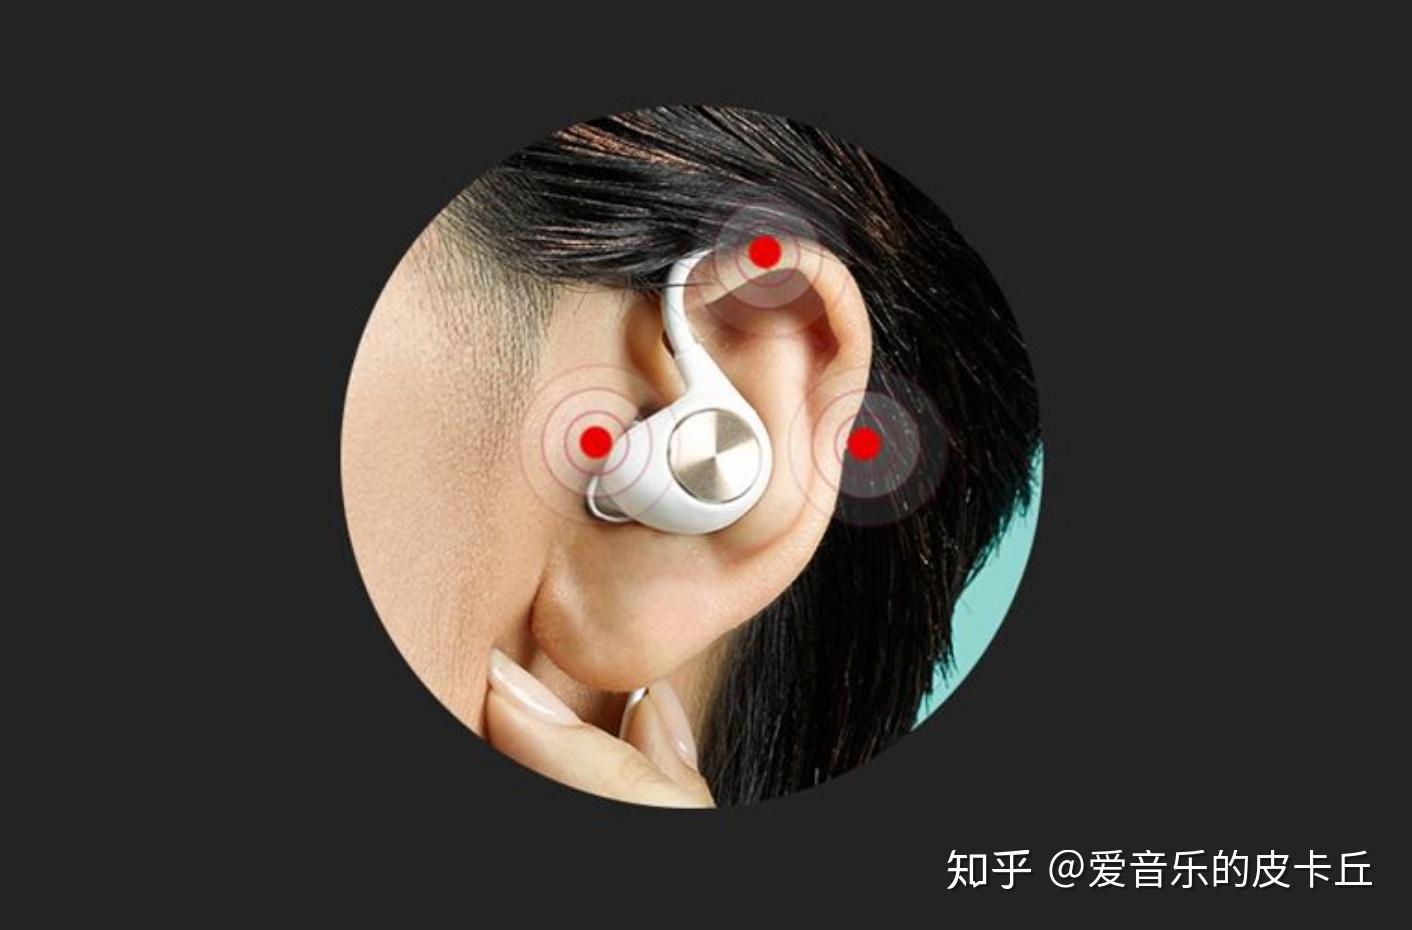 199元的小米 Line Free 颈挂式蓝牙耳机值得购买吗？ - 知乎